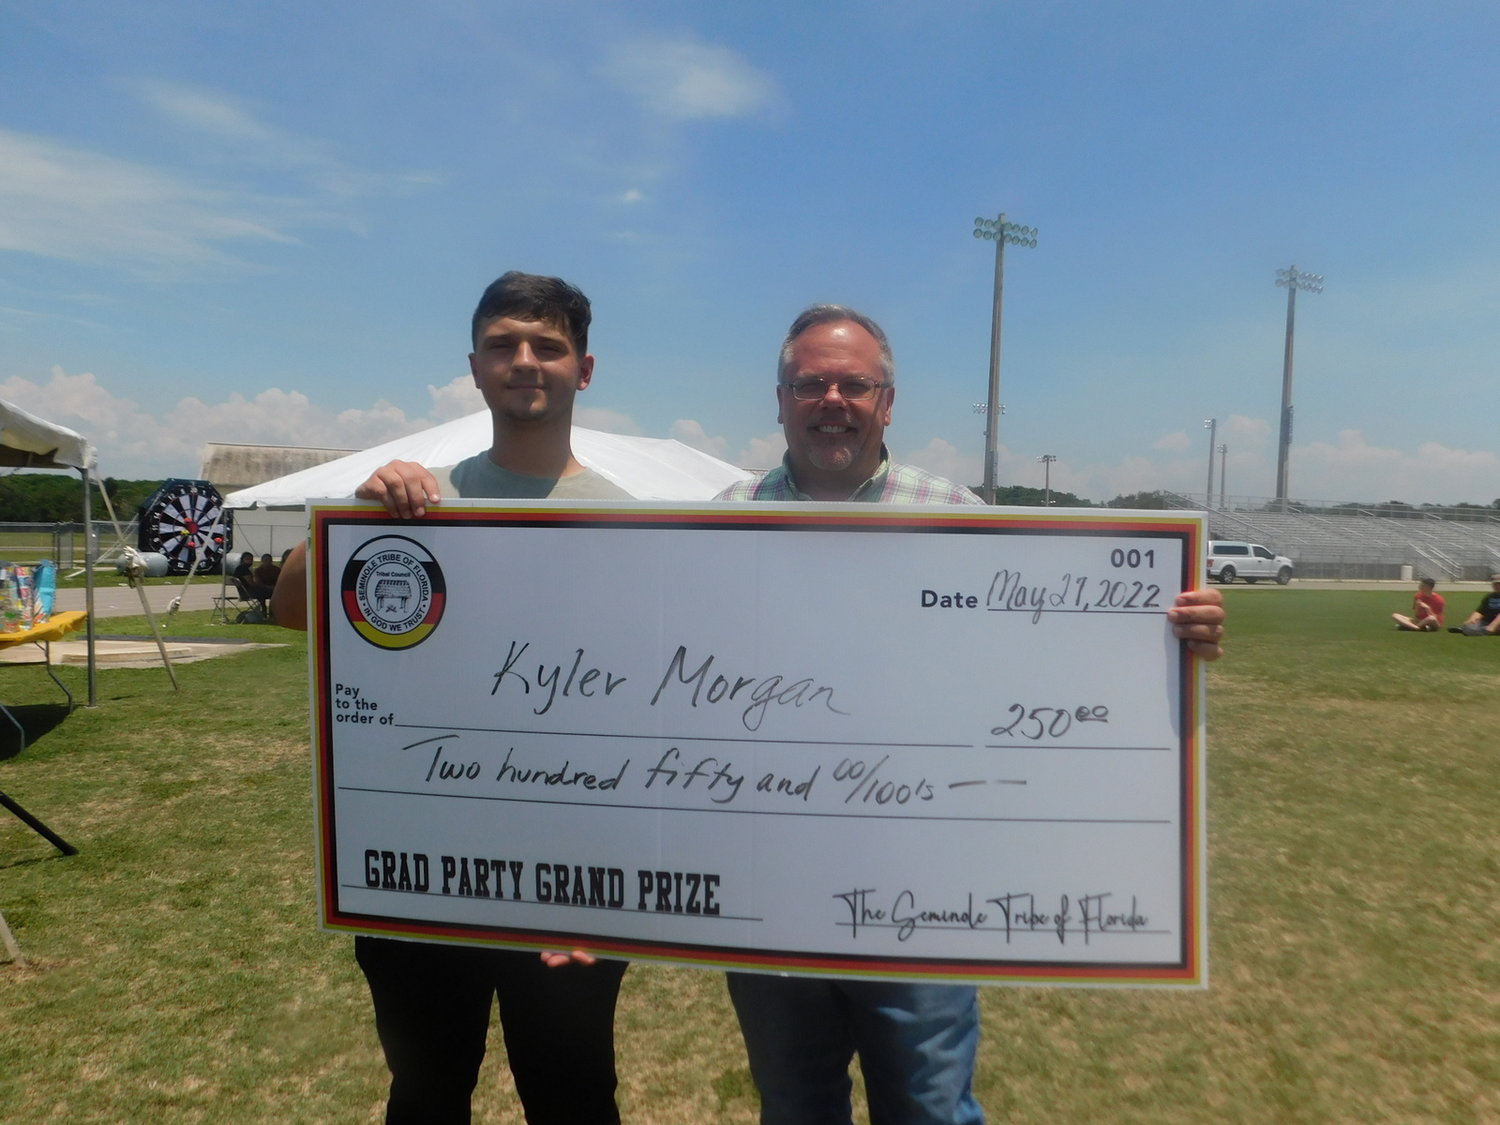 Ken Kenworthy (right) with $250 winner Kyler Morgan (left).